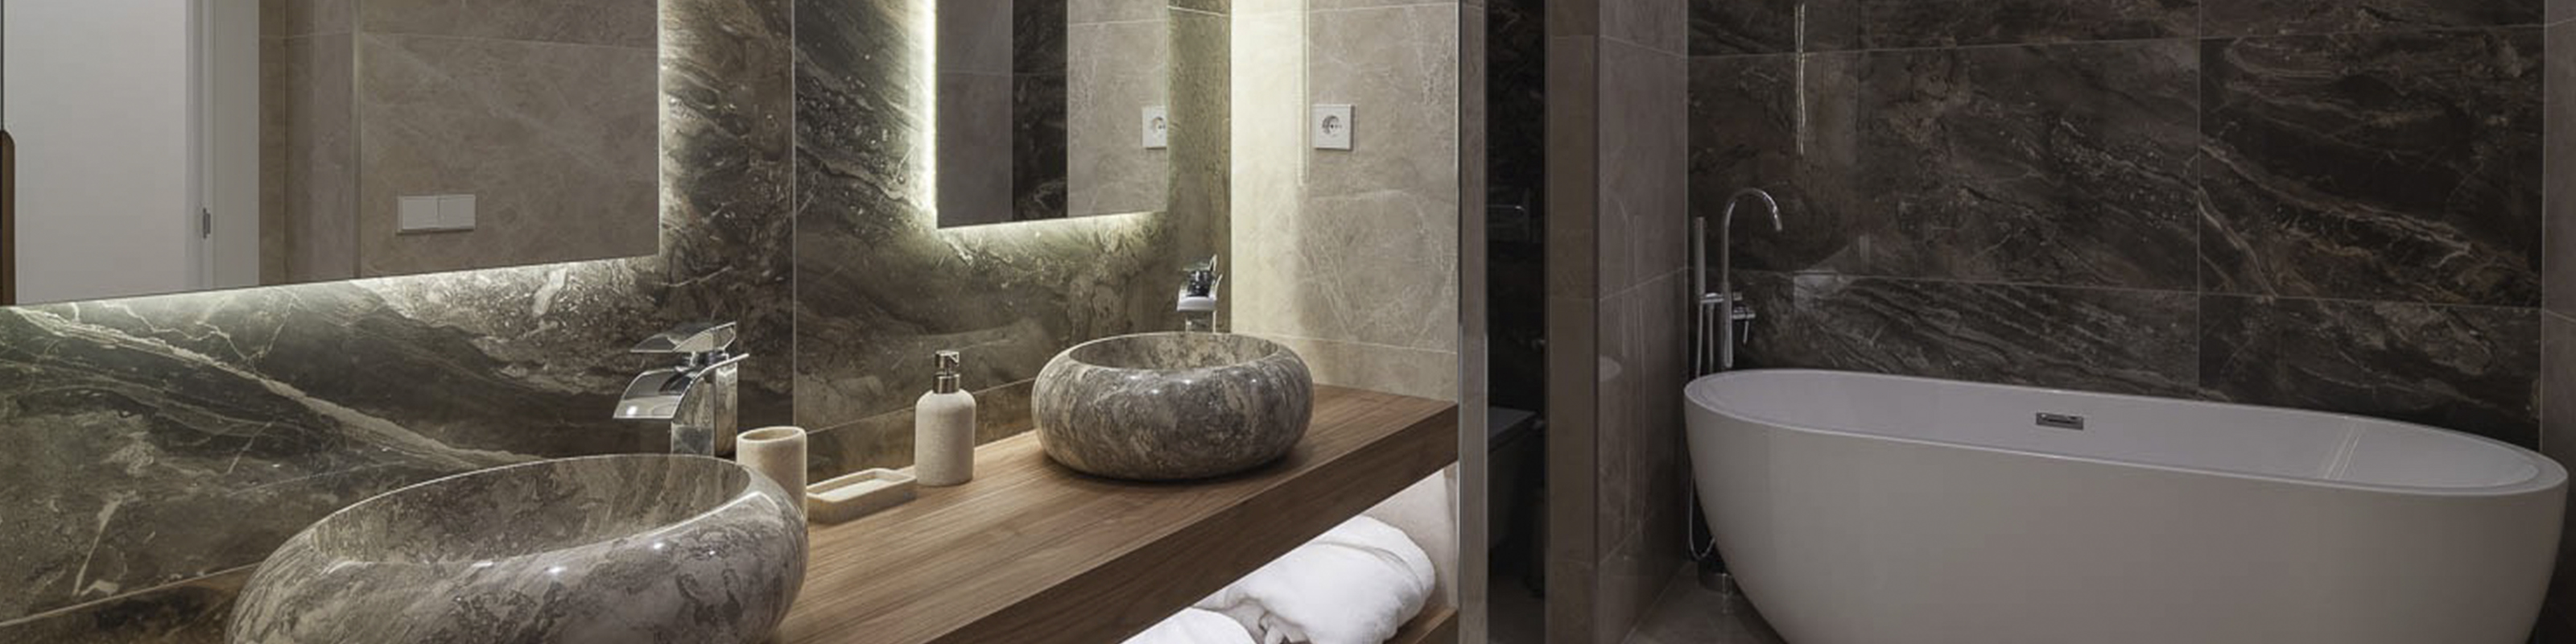 Baño moderno con elegantes paredes marmoladas en tonos oscuros, un oasis de lujo y diseño.